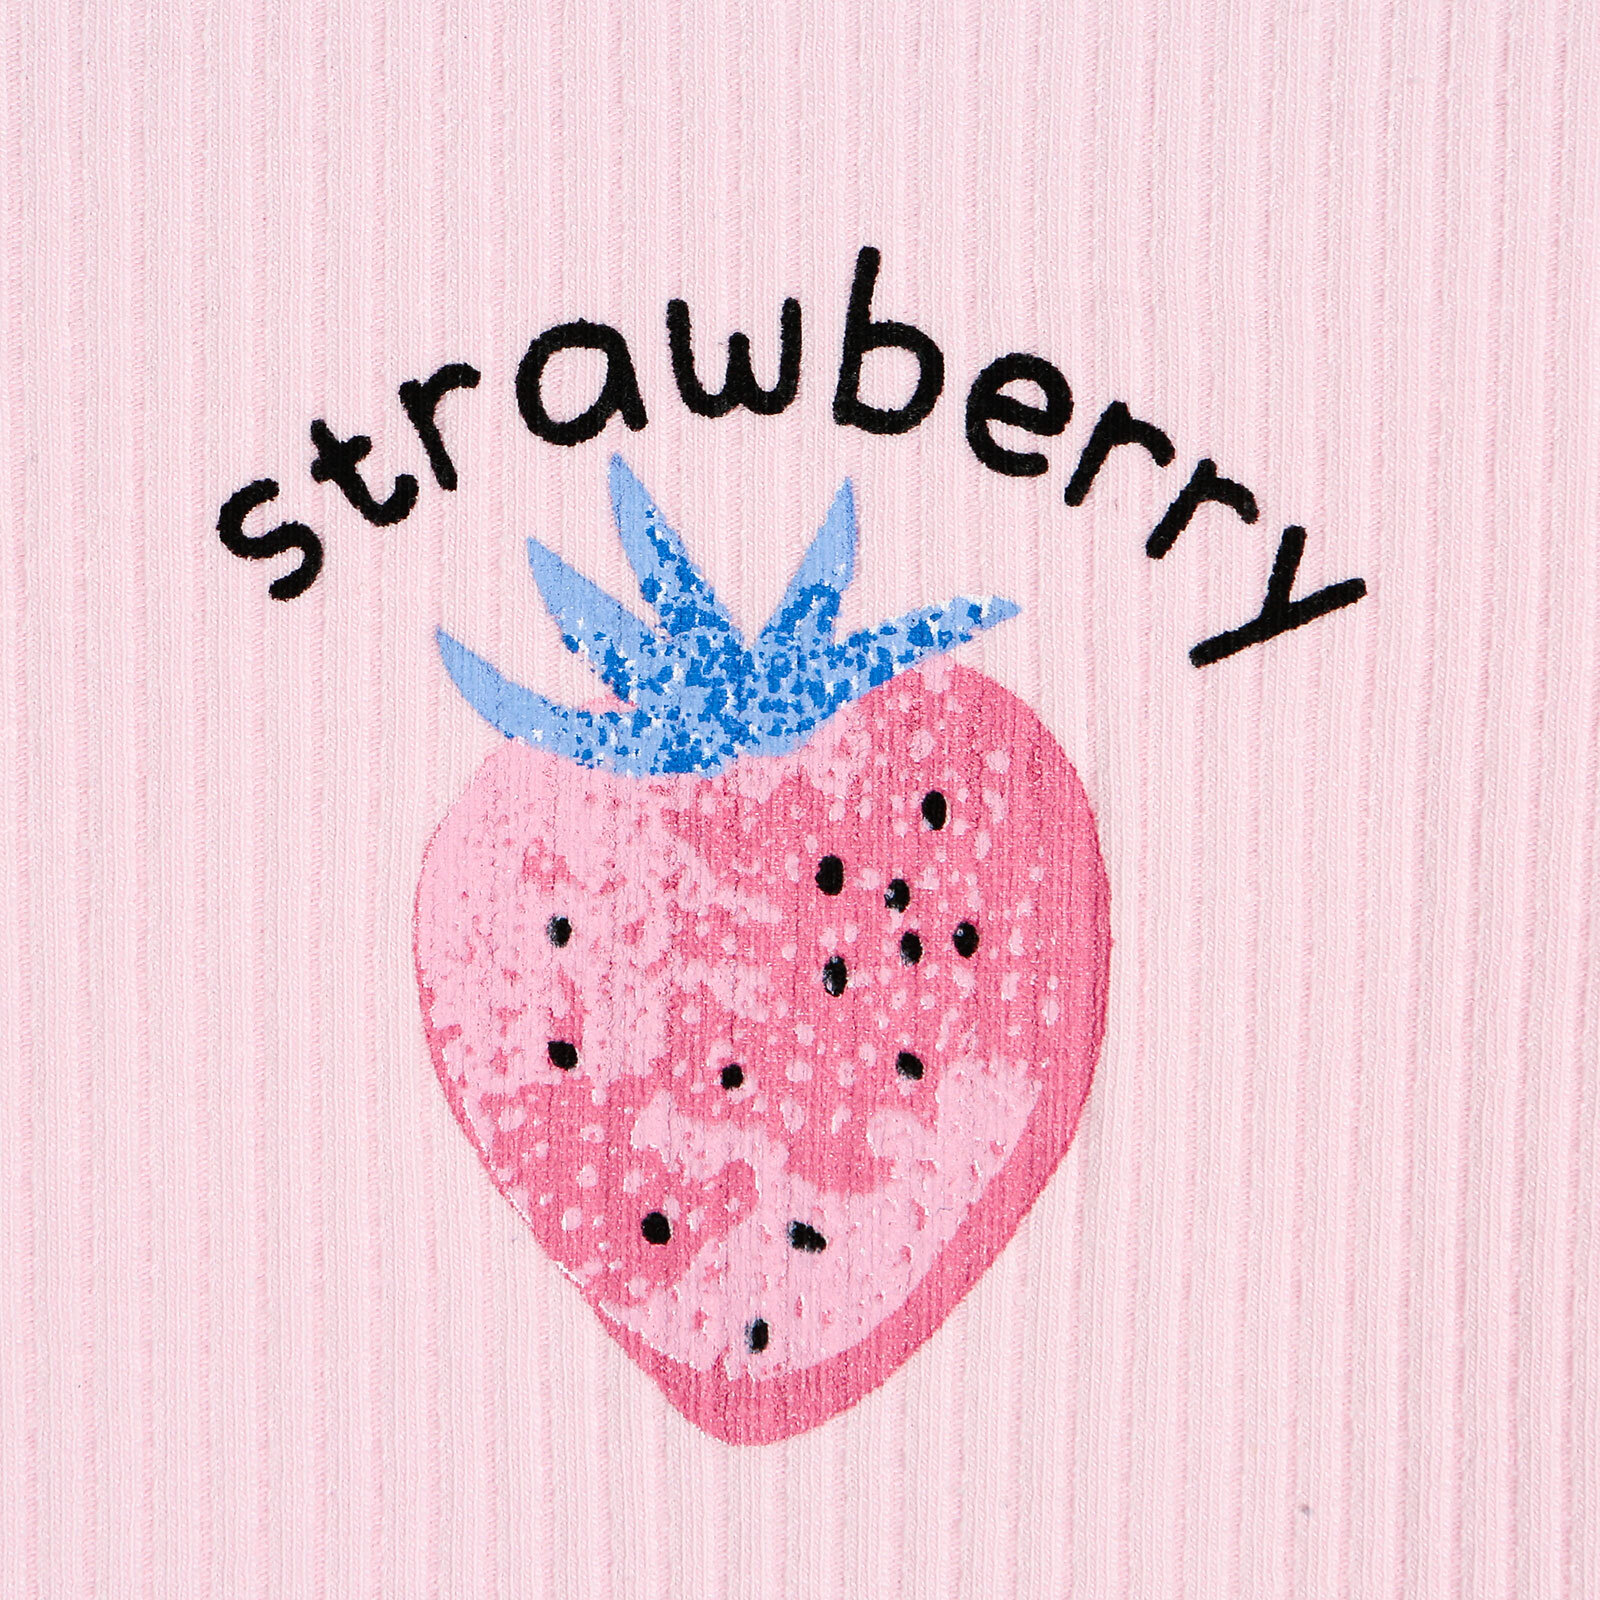 Strawberry Smell Barbatöz Kız Bebek